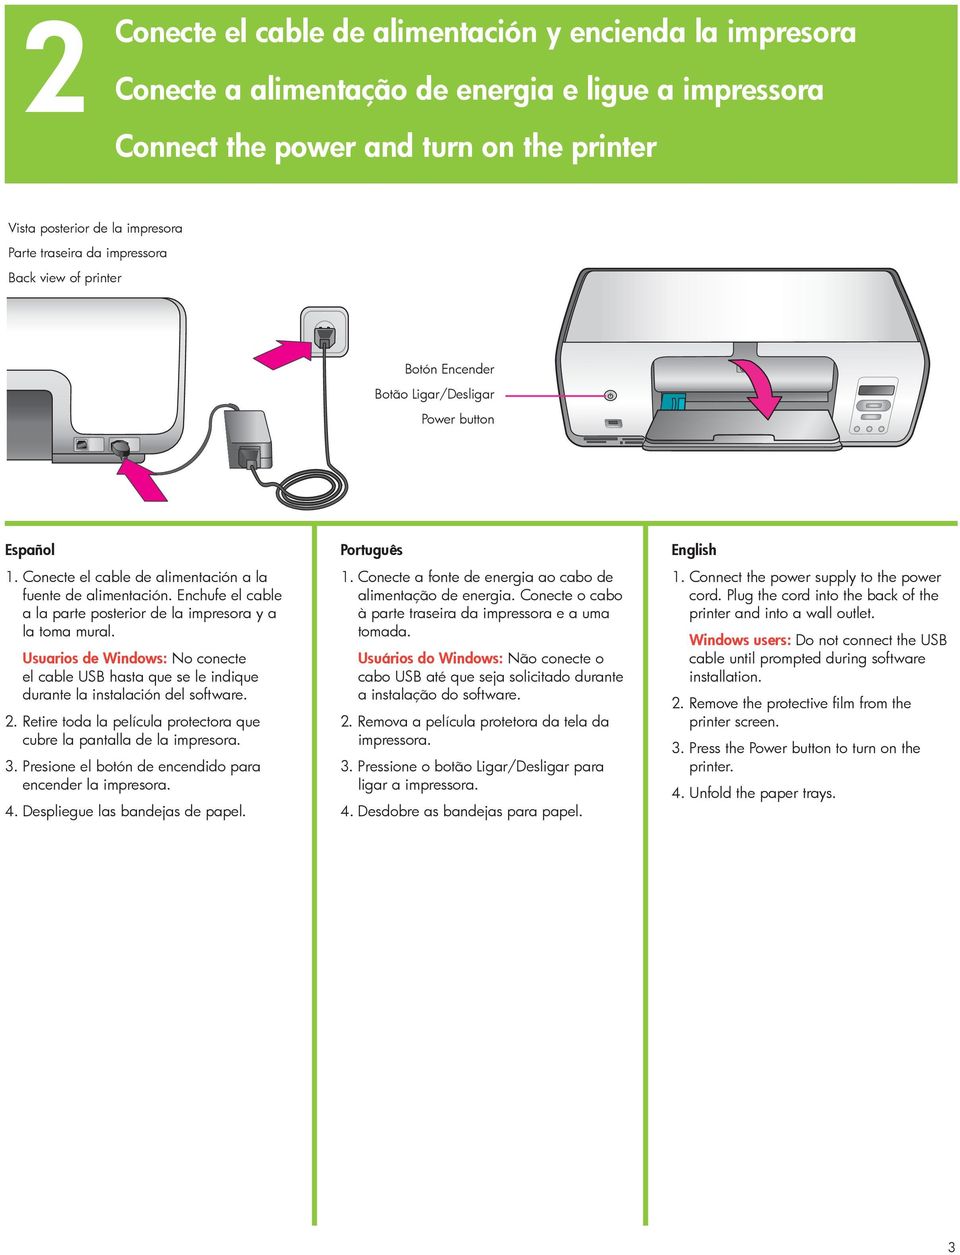 Enchufe el cable a la parte posterior de la impresora y a la toma mural. Usuarios de Windows: No conecte el cable USB hasta que se le indique durante la instalación del software. 2.